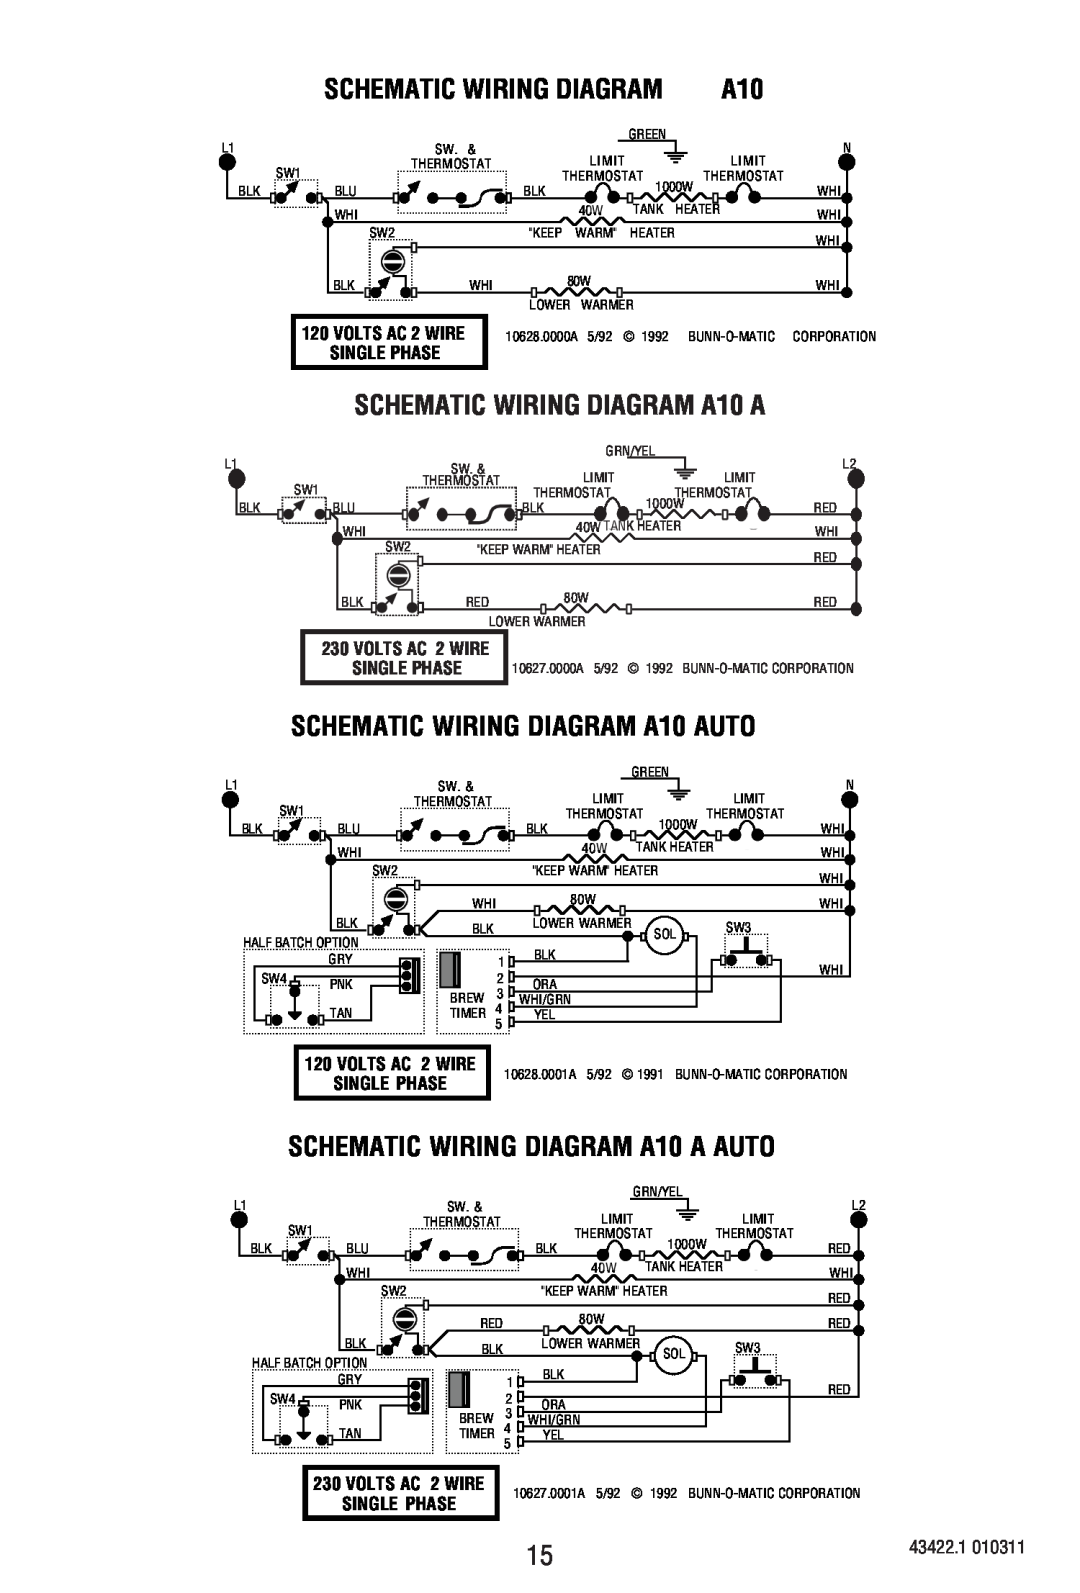 Bunn Schematic Wiring Diagram, SCHEMATIC WIRING DIAGRAM A10 AUTO, SCHEMATIC WIRING DIAGRAM A10 A AUTO, Single Phase 